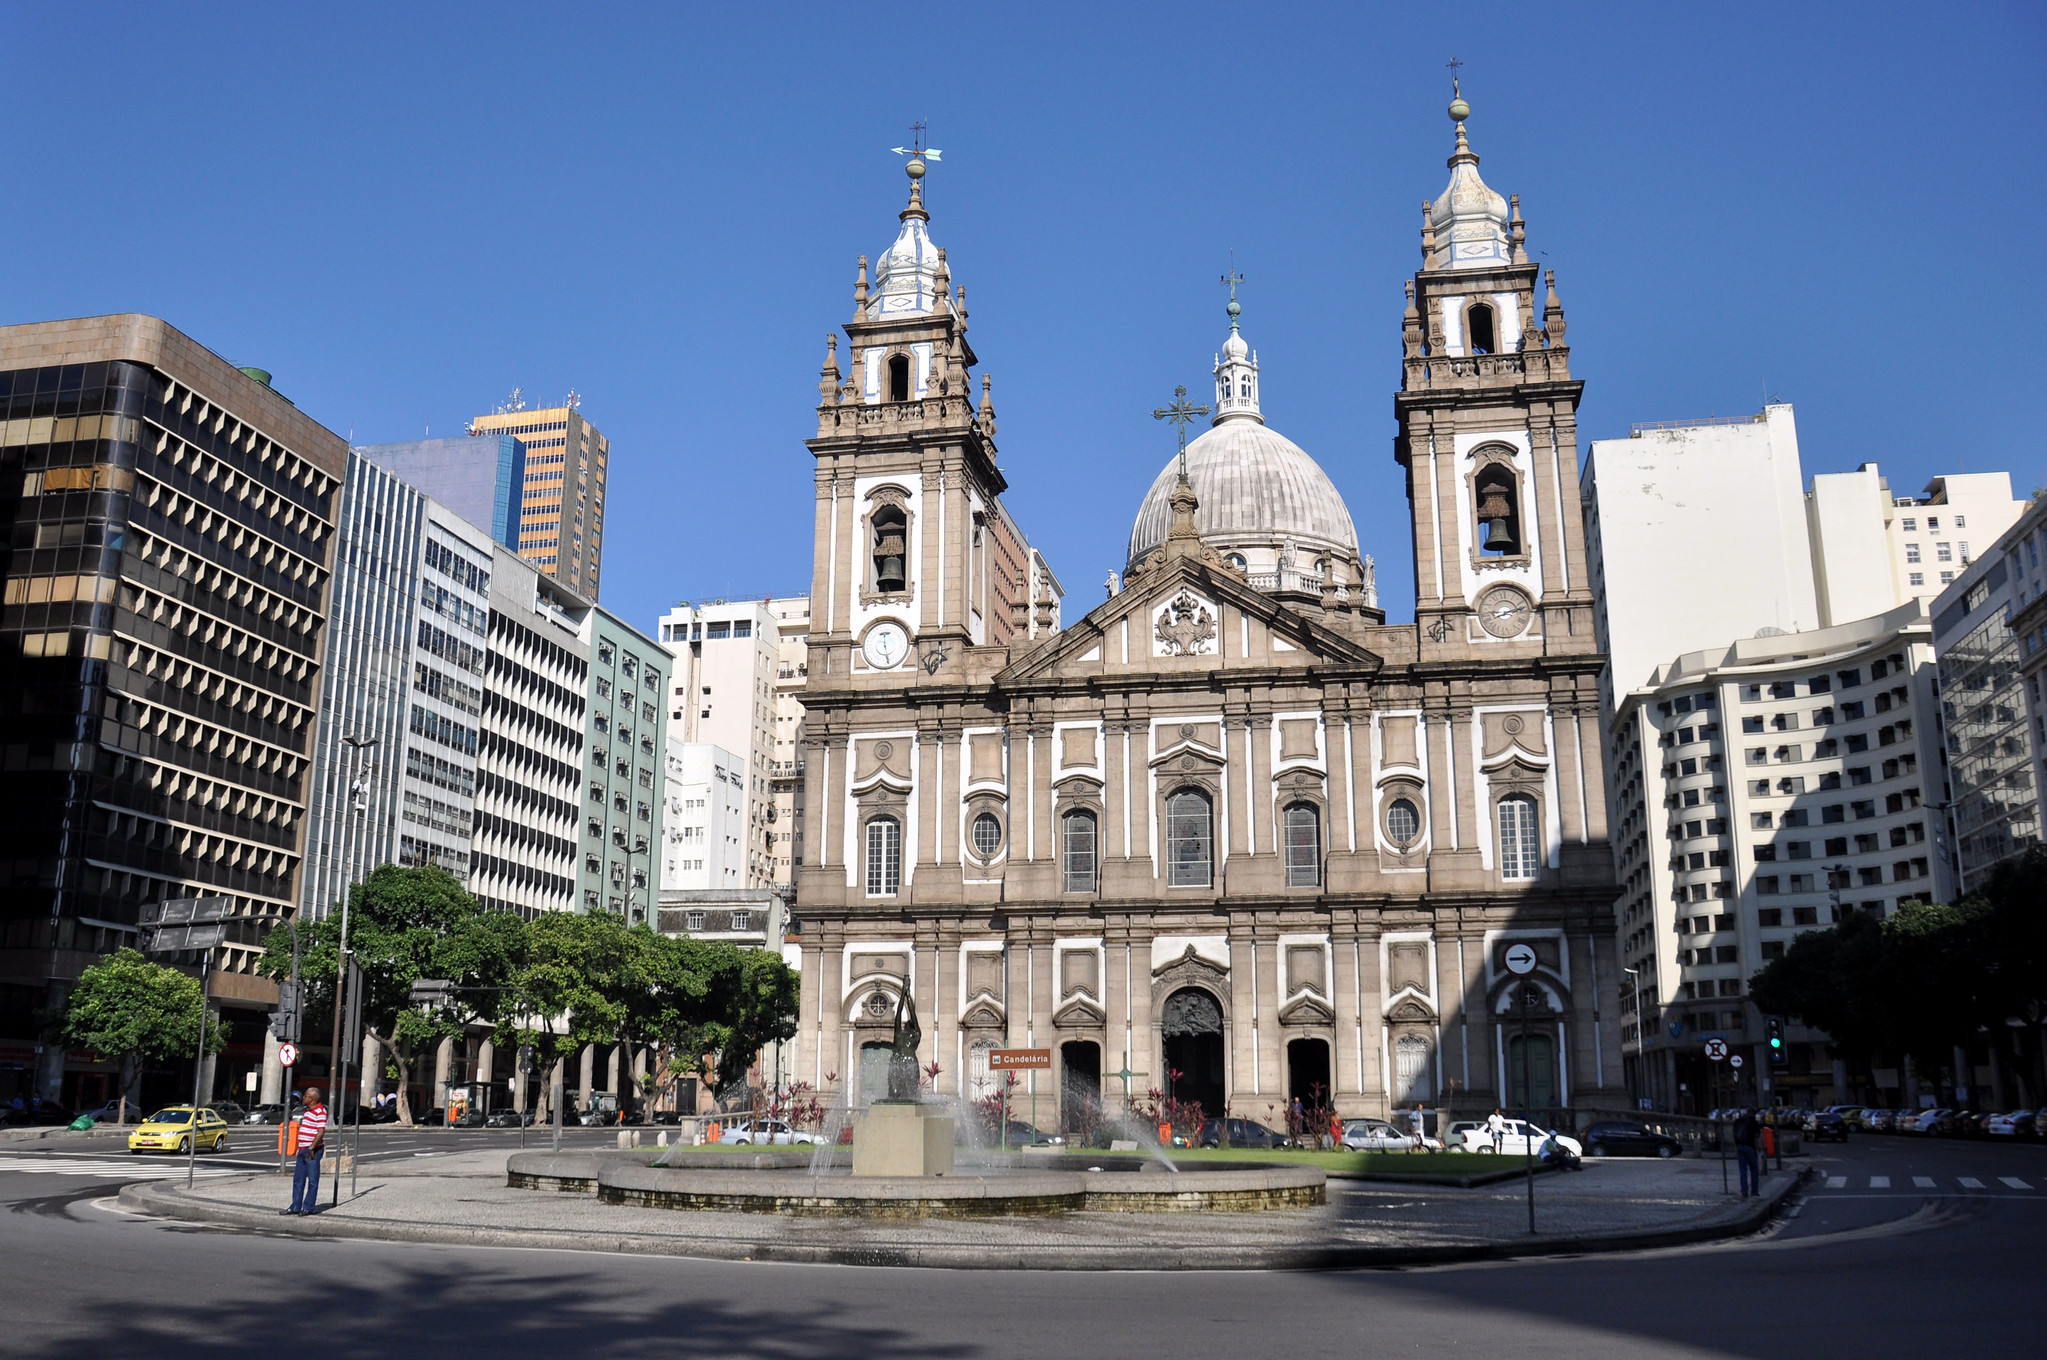 Candelaria church - downtown Rio de Janeiro